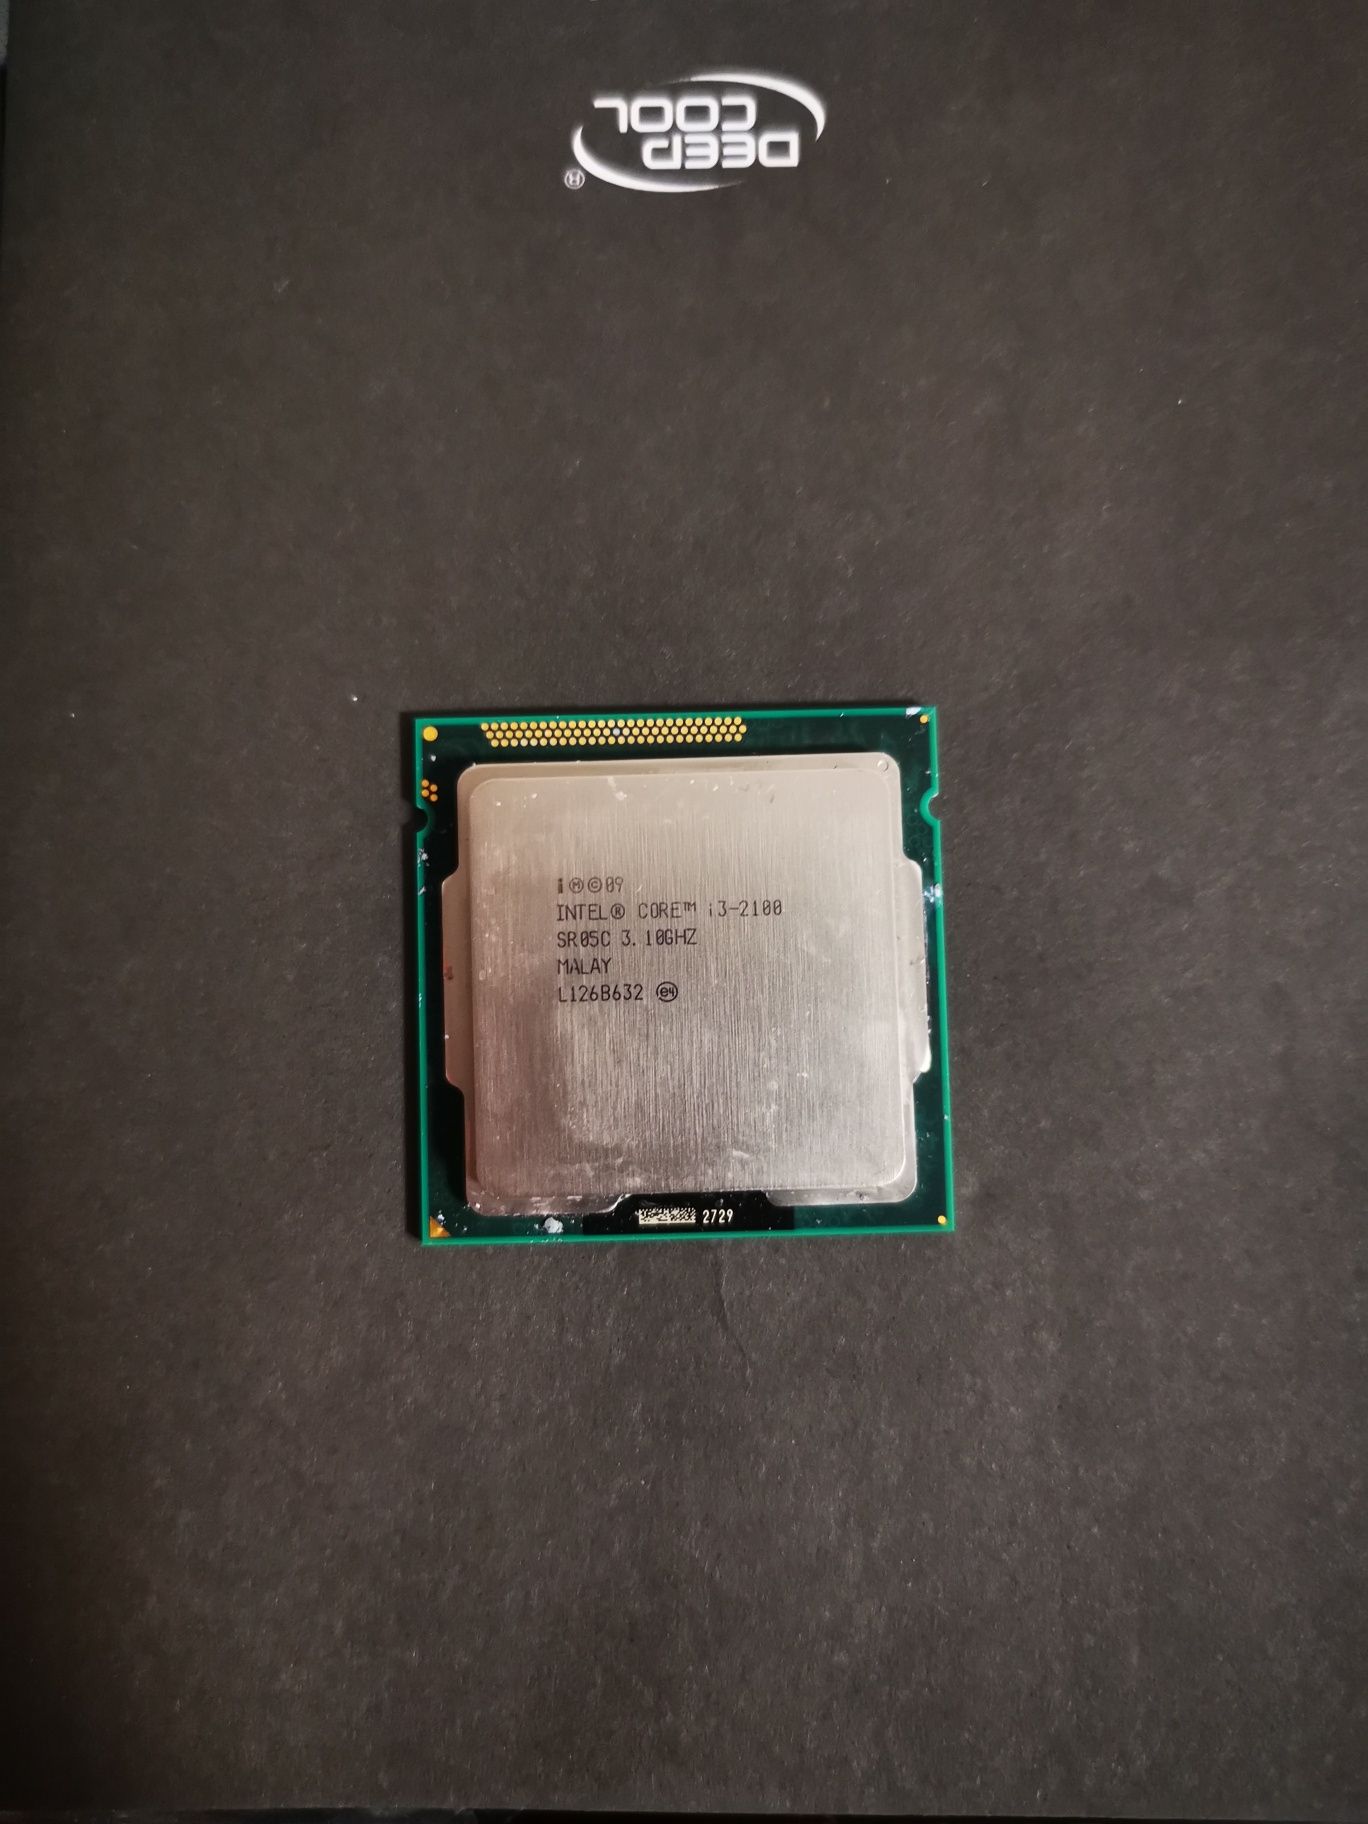 Procesor Intel pentium i3-2100